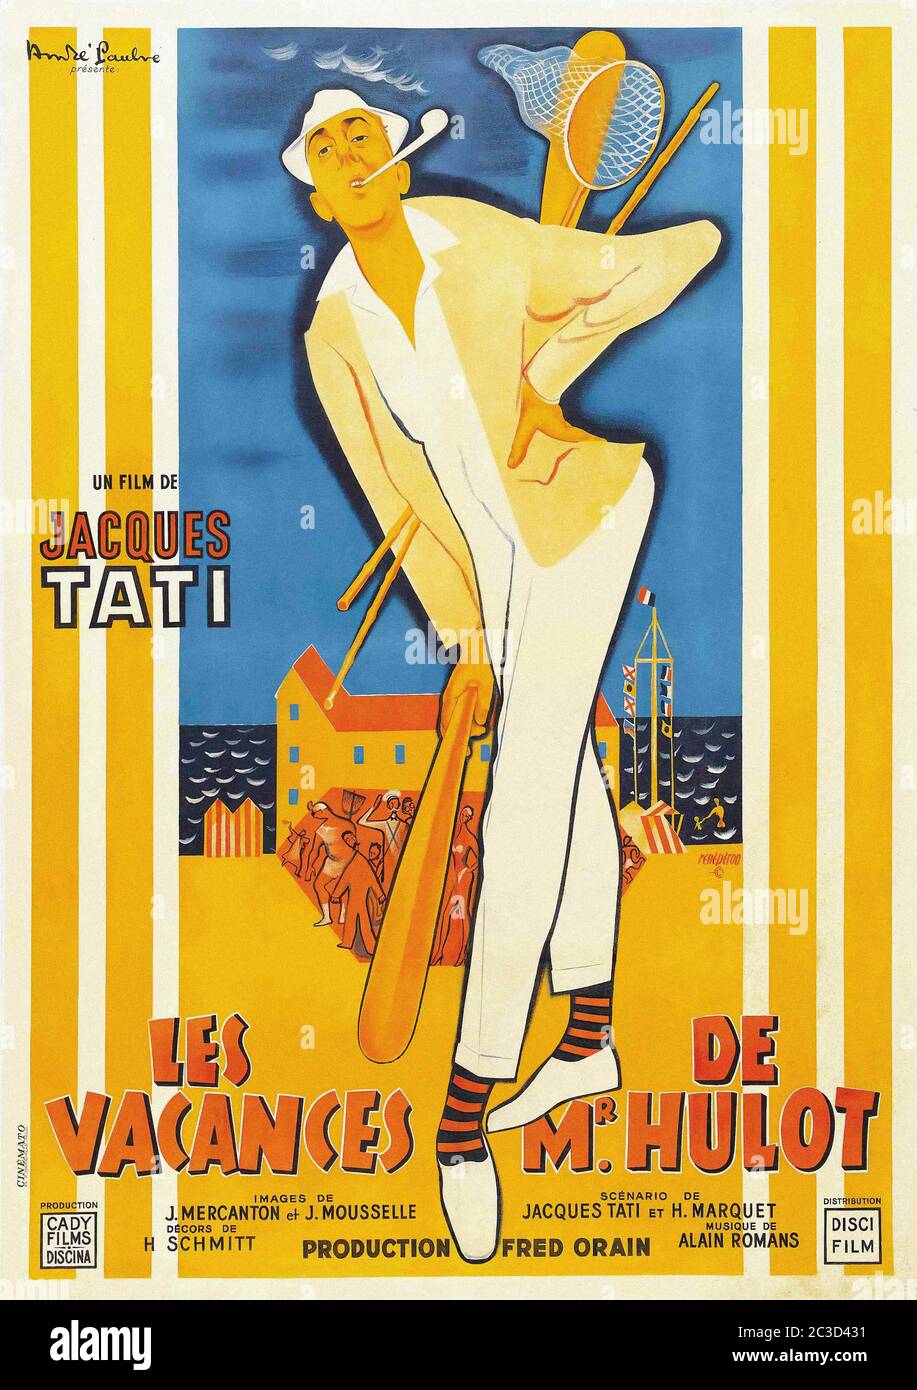 Les Vacances De Monsieur Hulot - French Vintage Movie Poster Stock ...